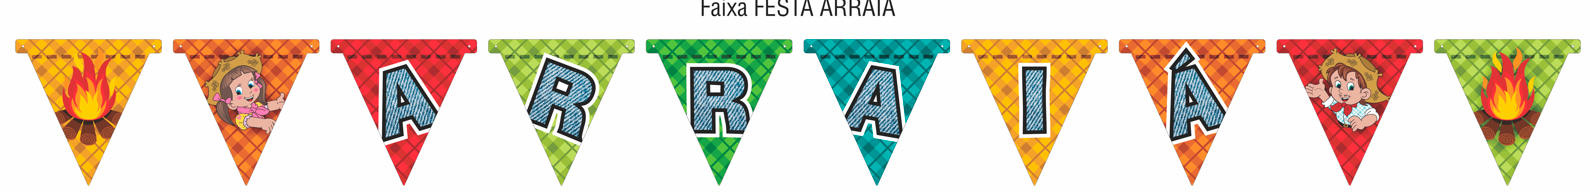 7908364112625 - FEIXA FESTA ARRAIAL REF 106.2